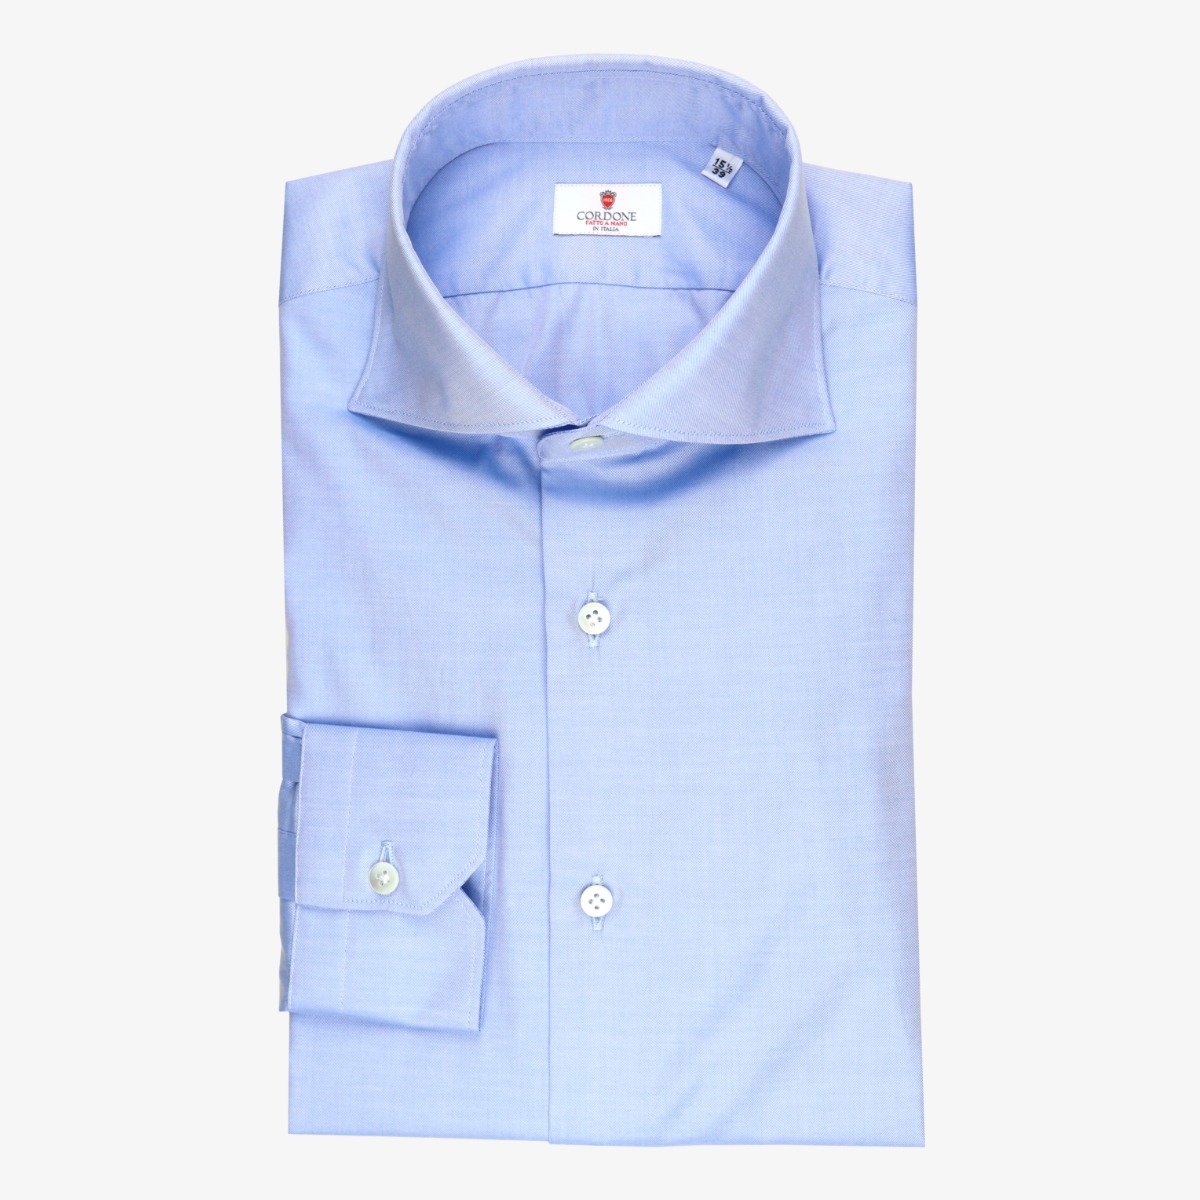 Cordone 1956 light blue slim fit twill men's dress shirt